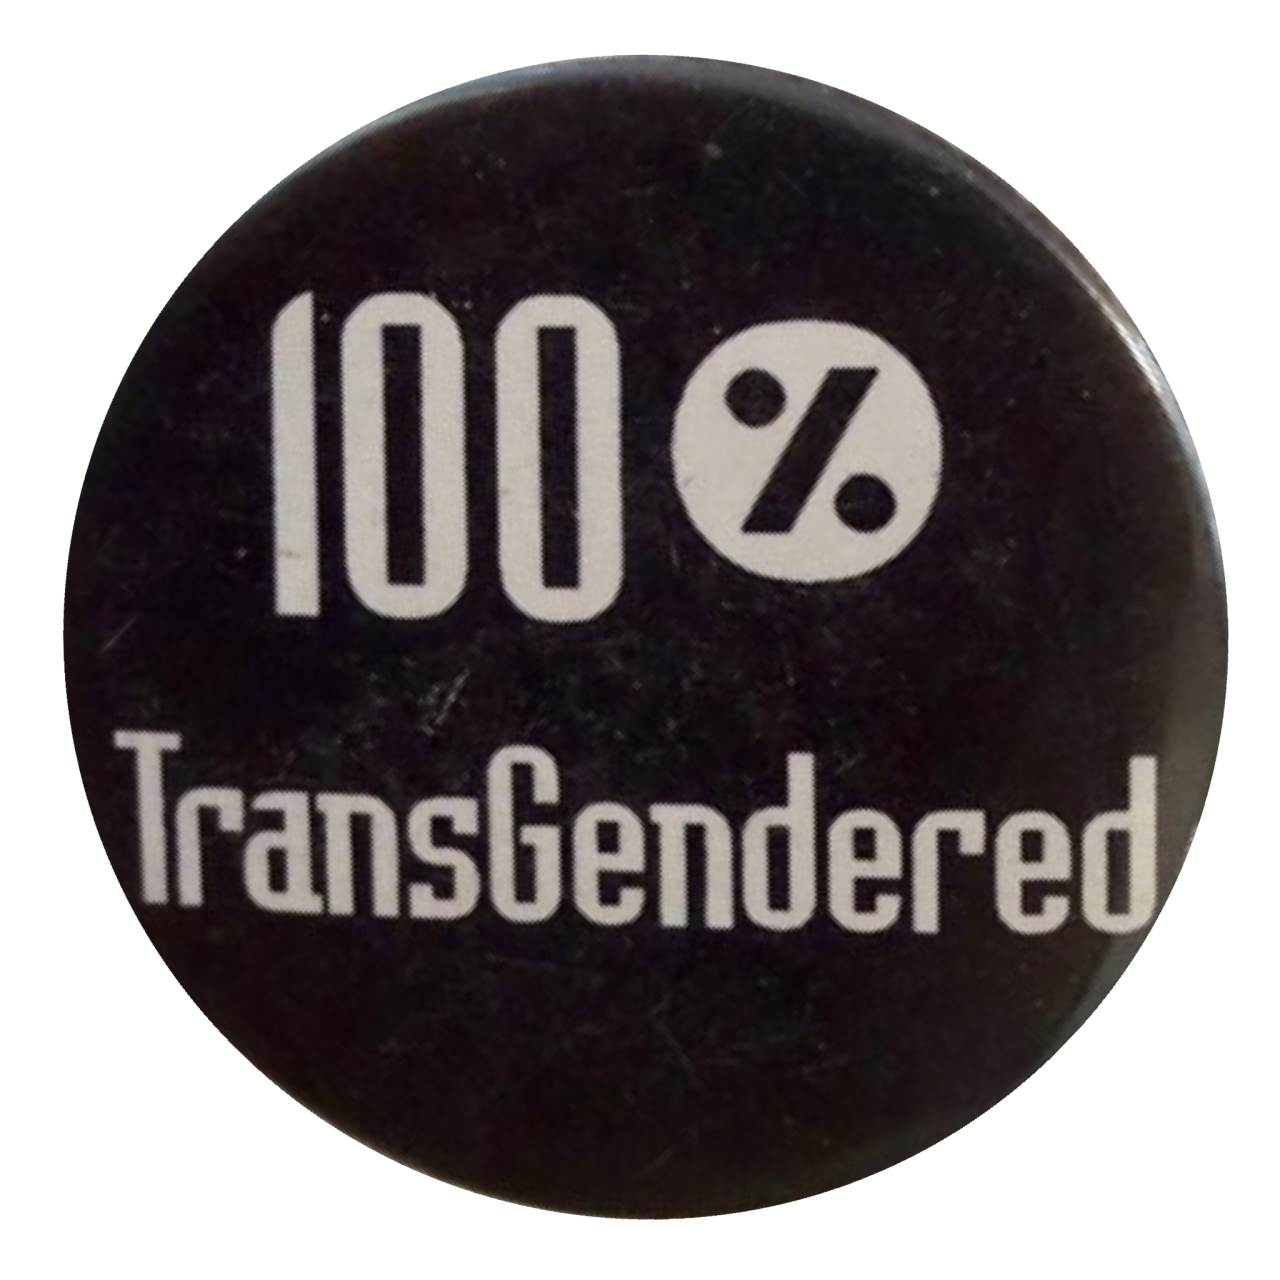 100% transgendered